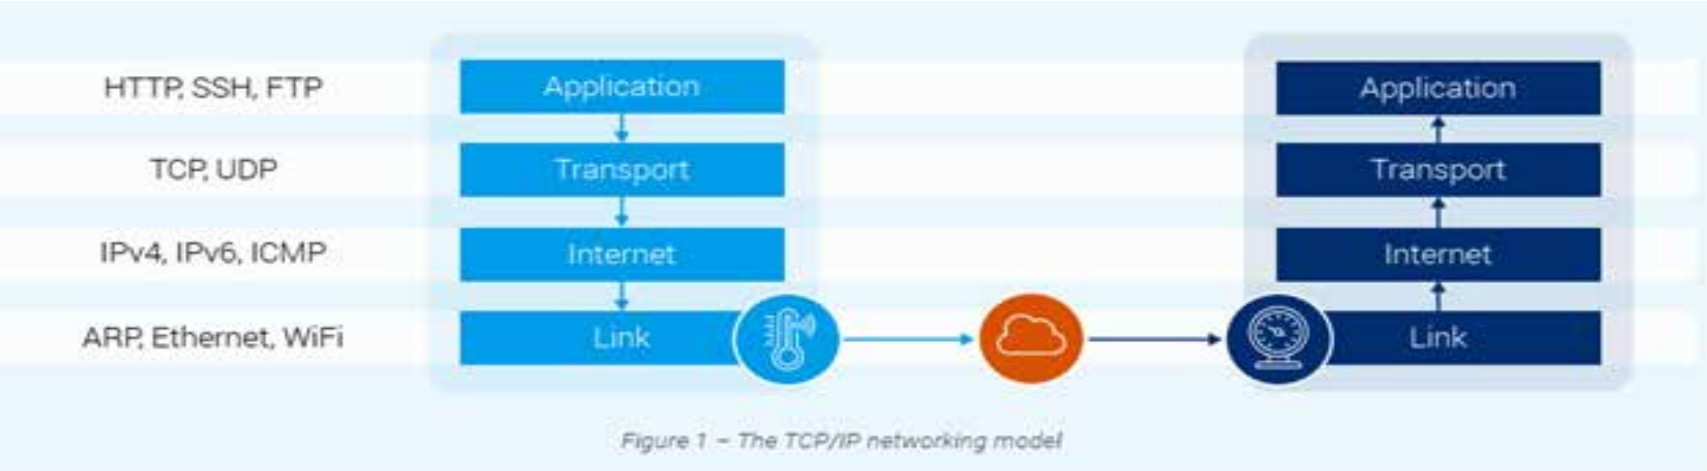 Các lỗ hổng ngăn xếp TCP/IP trên IoT - Ảnh 1.